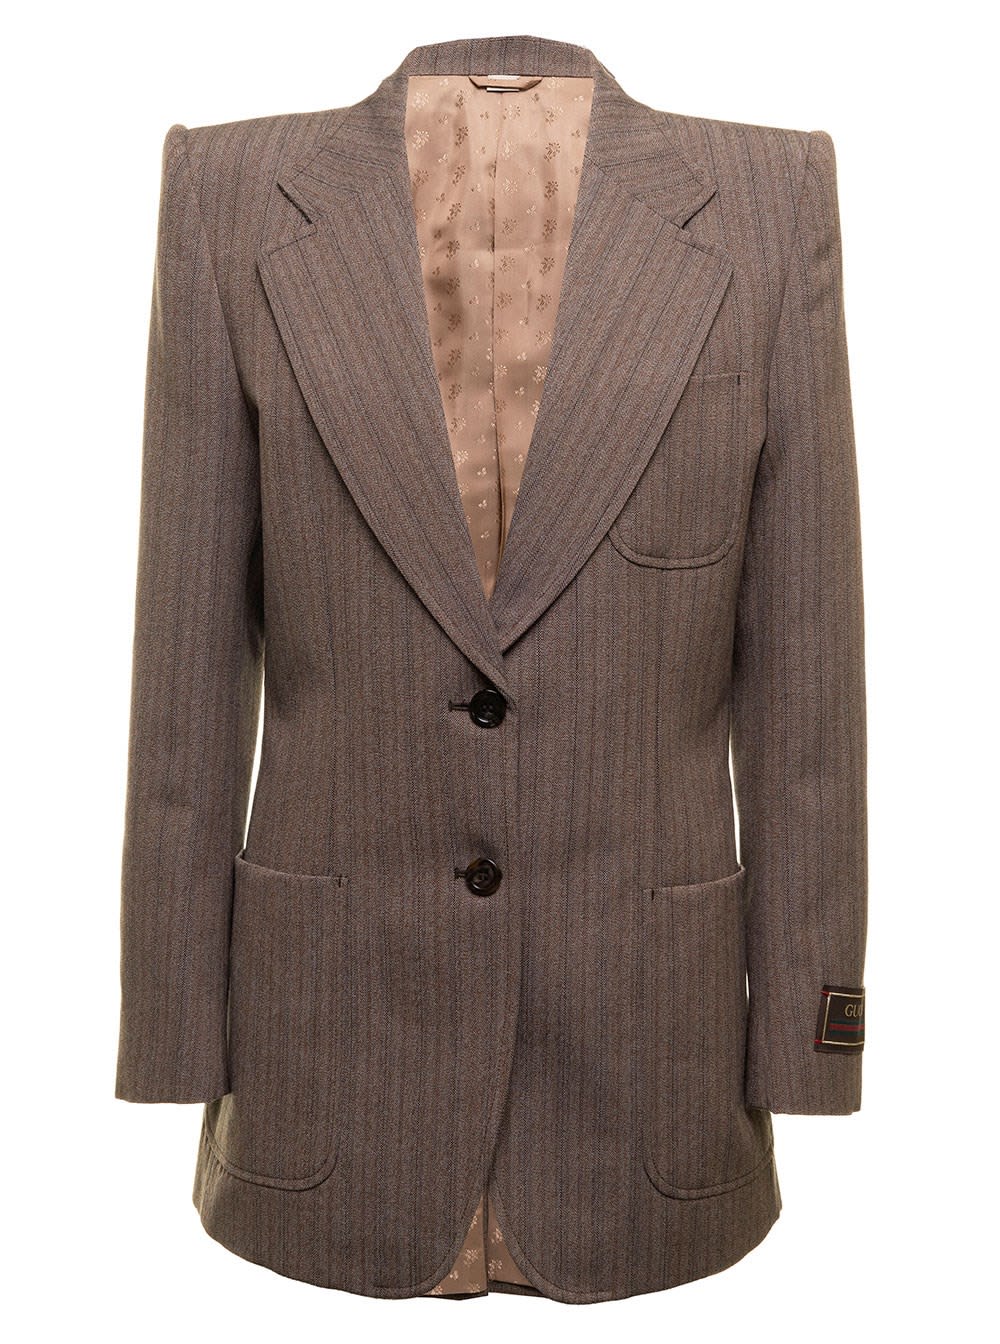 Gucci herringbone wool jacket